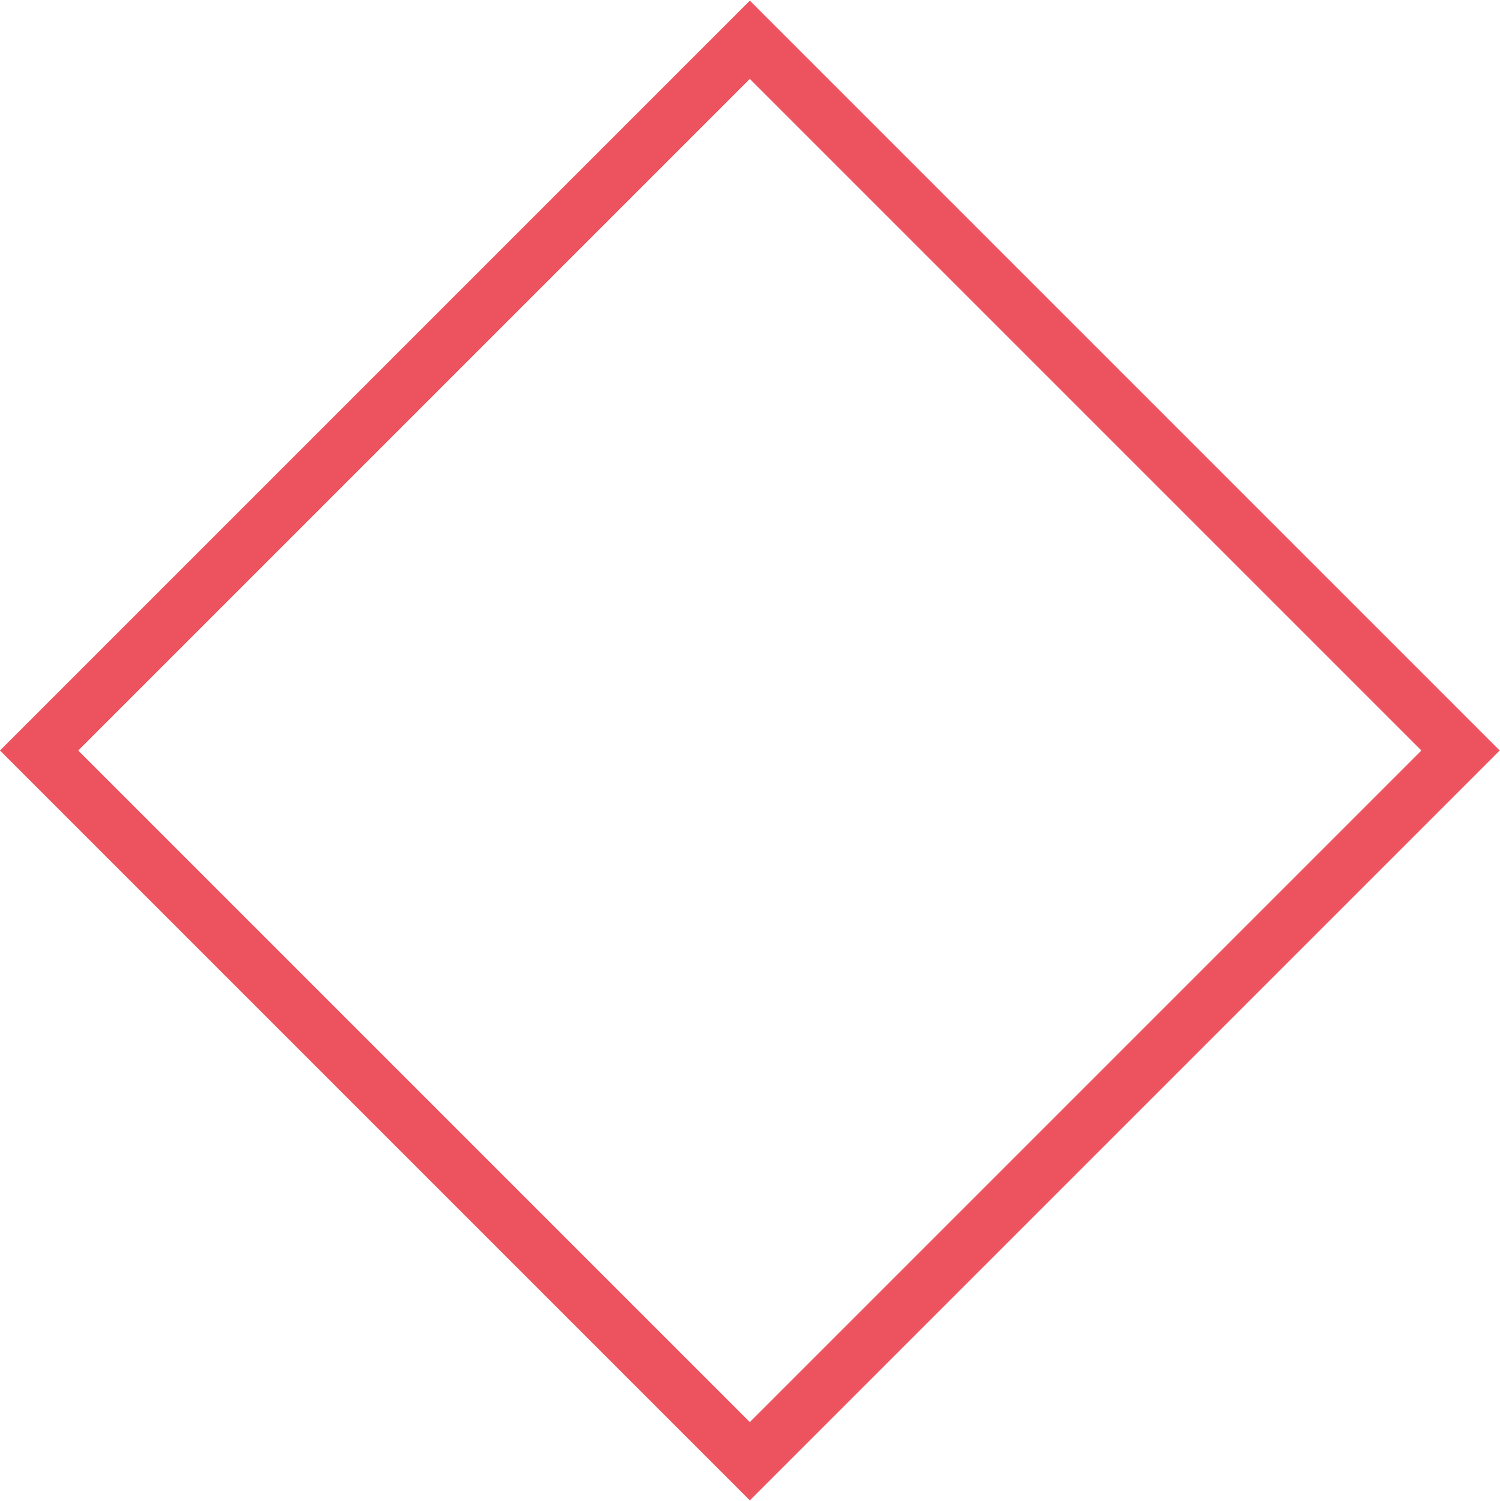 TSG Metal Fabrication